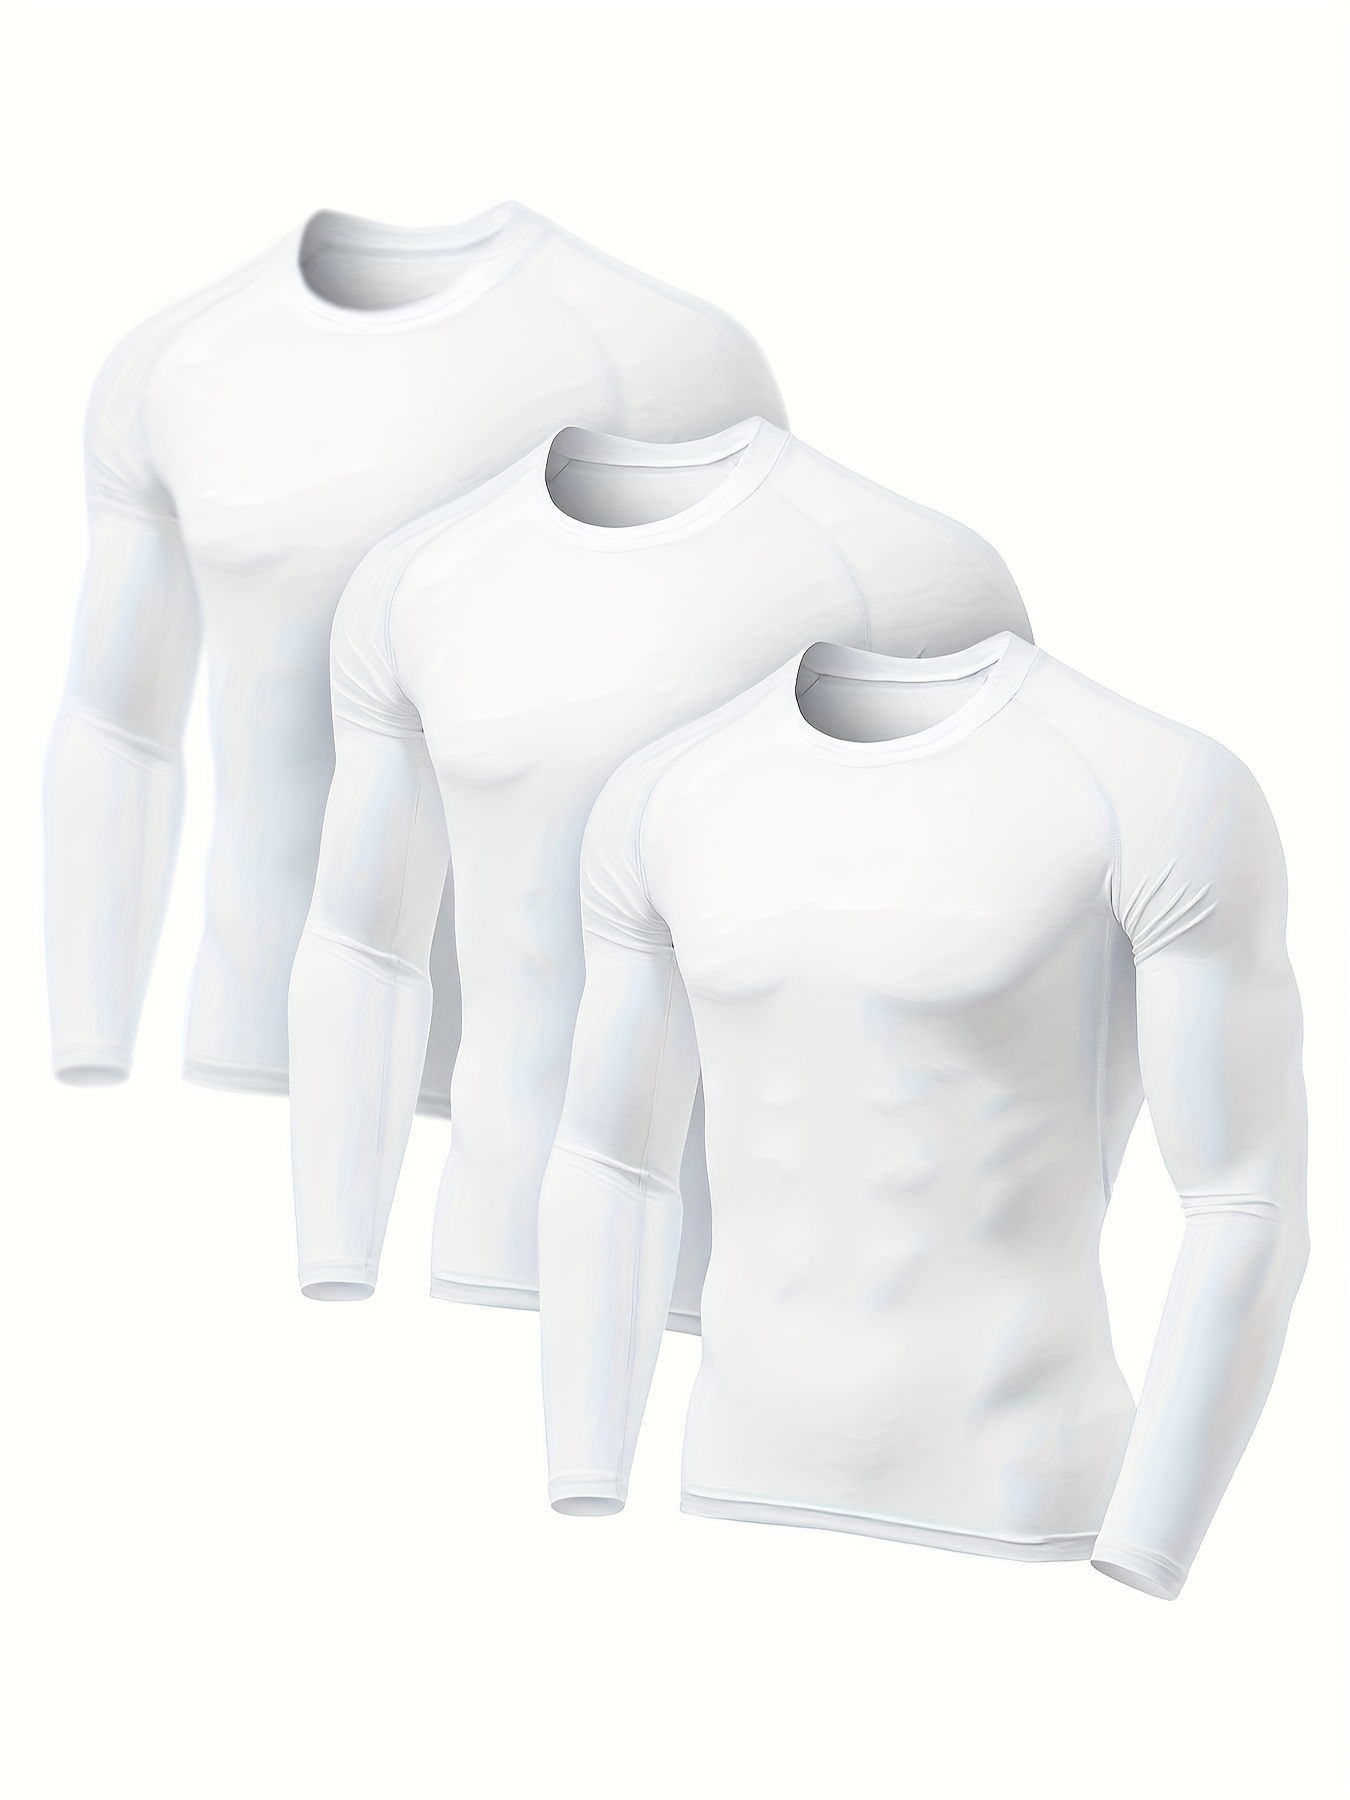  ADOREISM Camisetas térmicas de manga larga para hombre, parte  superior que absorbe la humedad, capa base atlética, para entrenamiento,  deportes, para clima frío y invierno, color azul, talla S : Ropa